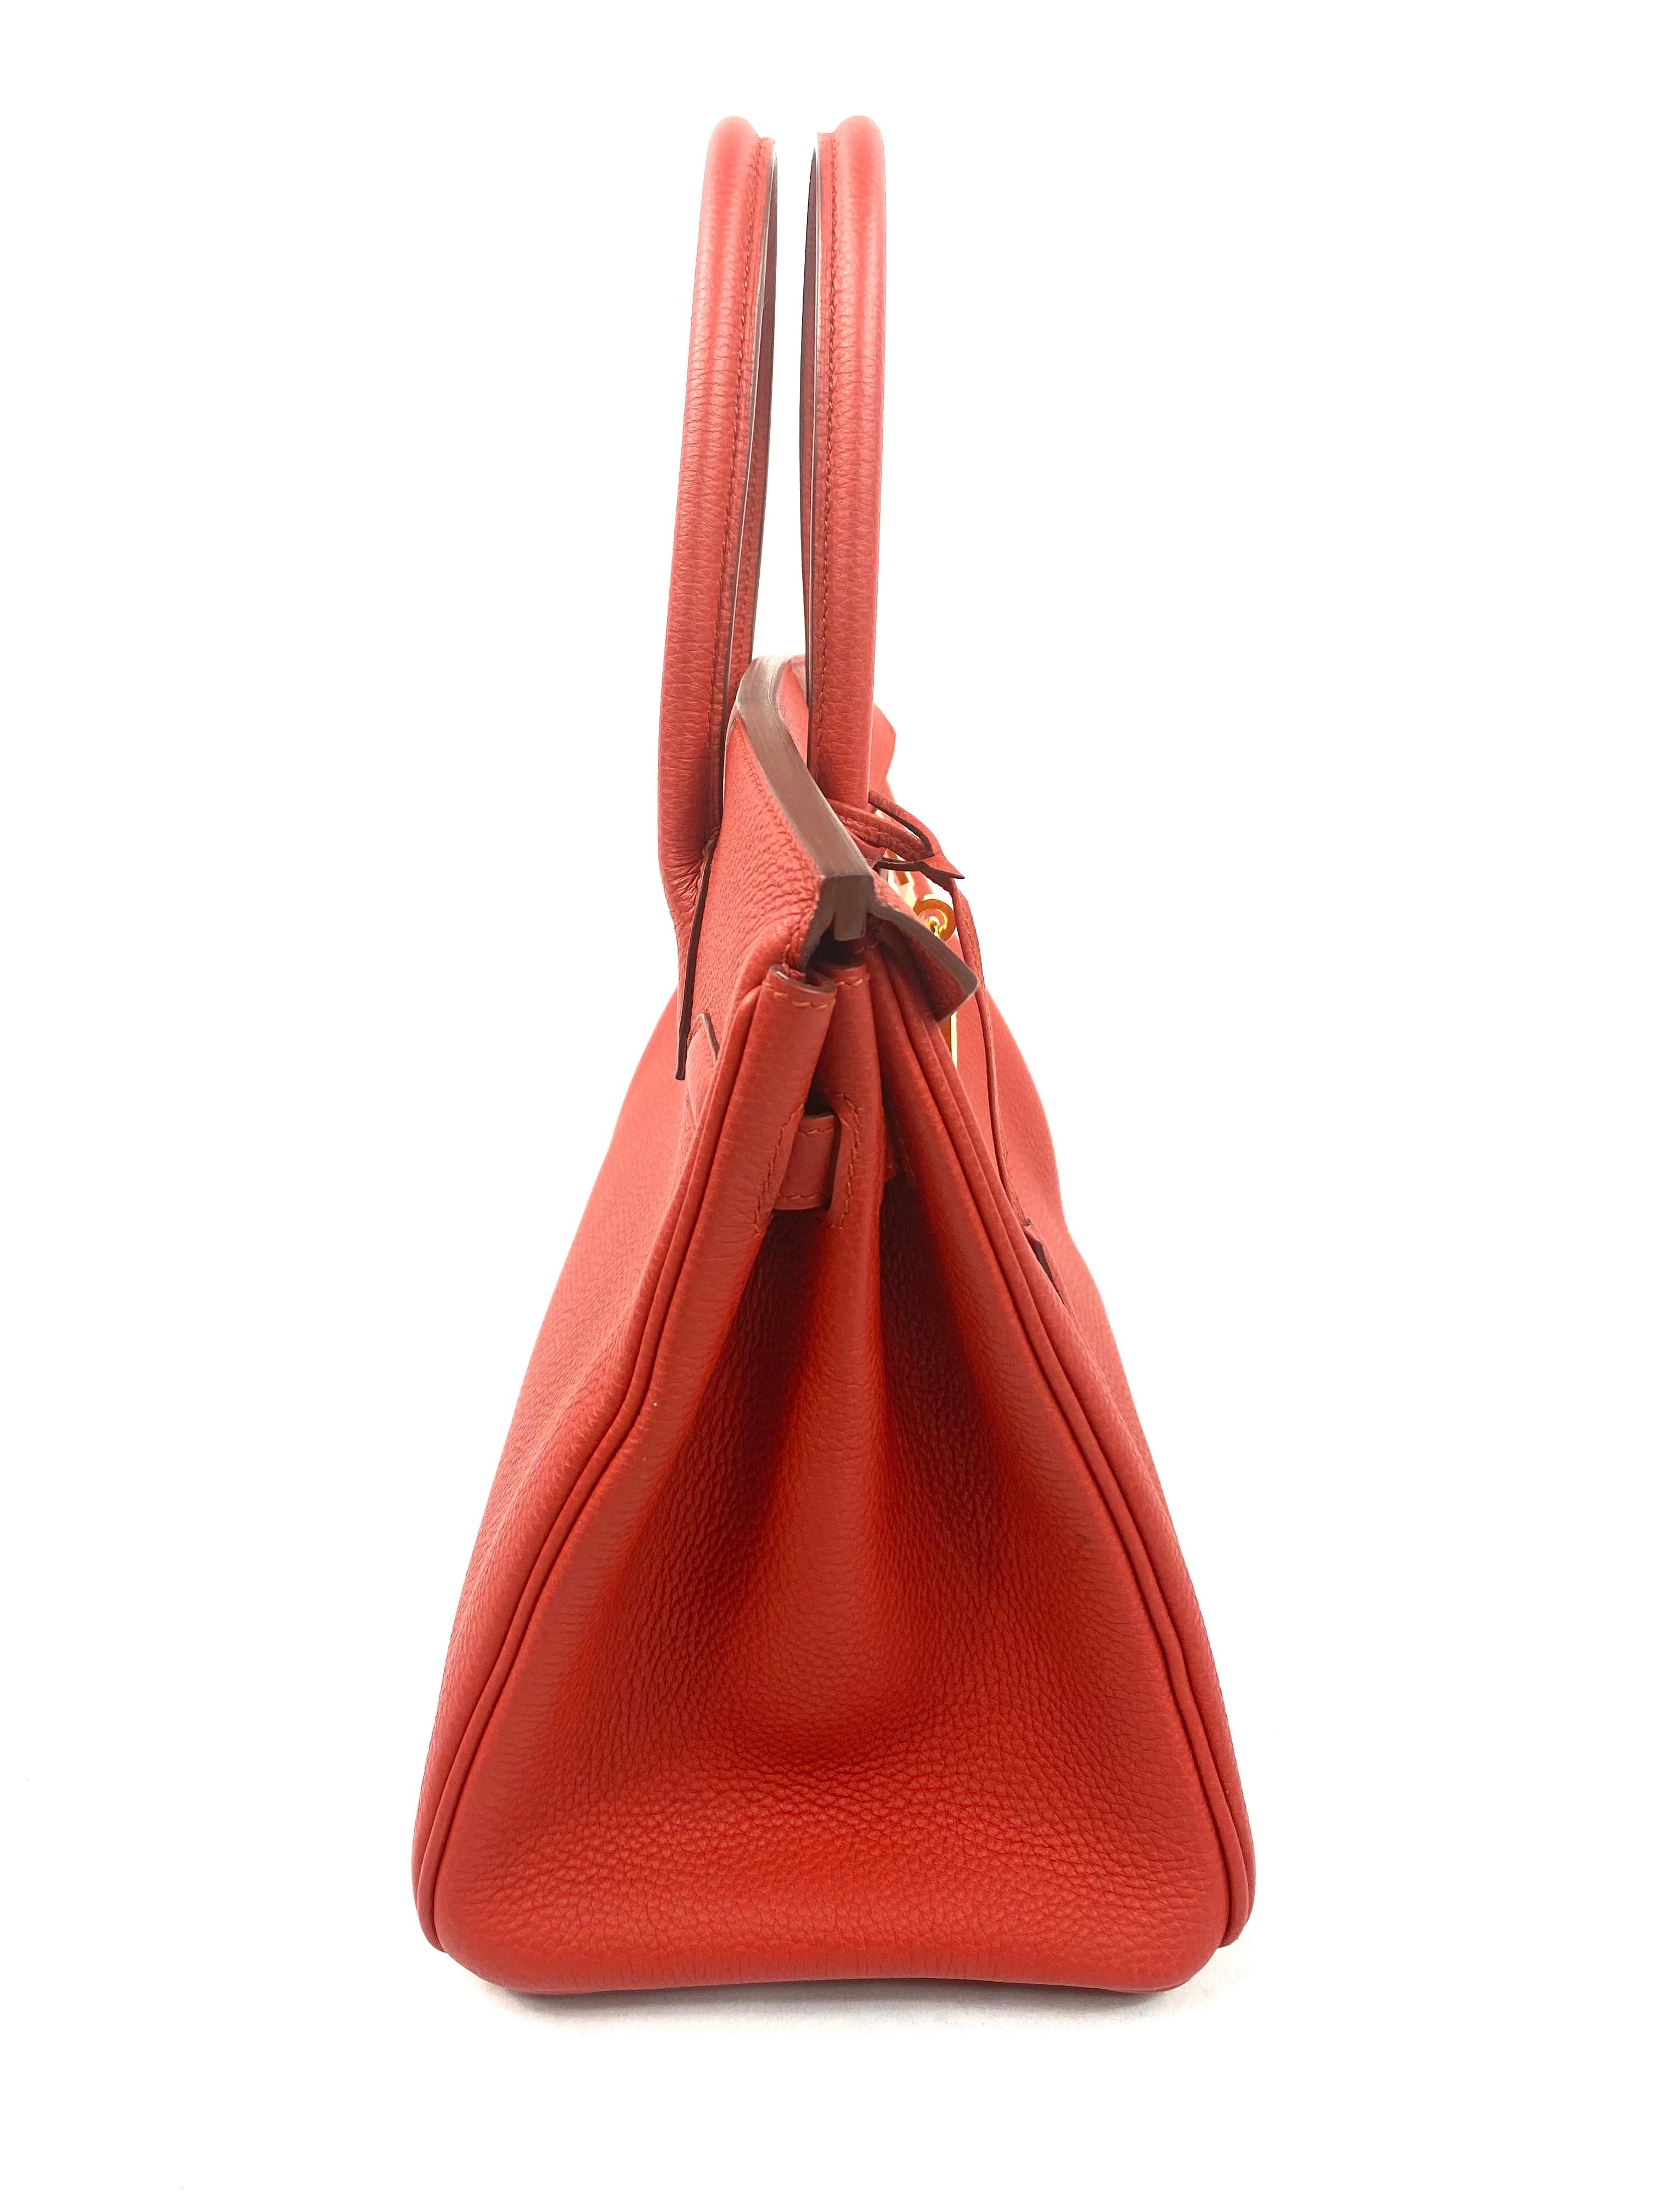 Hermes Birkin 30 Veau Togo Geranium Rot Vermillon Handtasche für Damen oder Herren